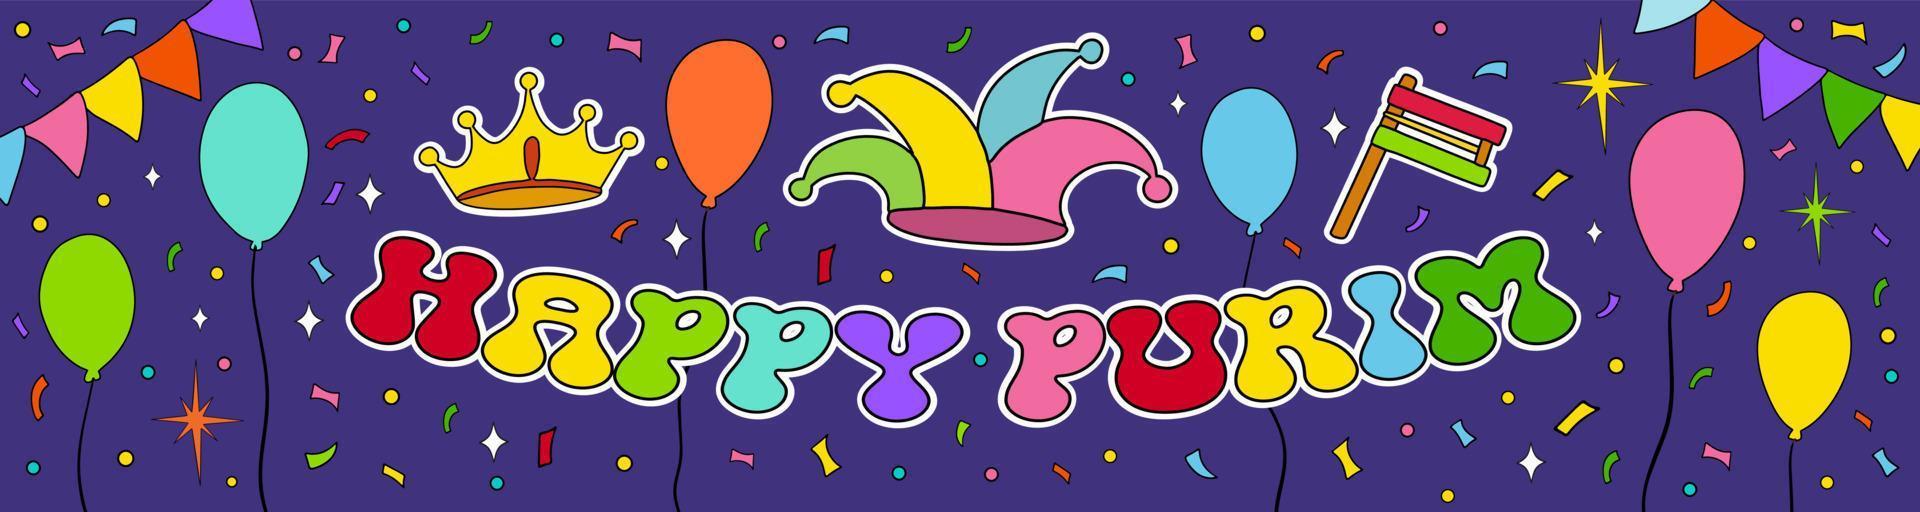 Happy Purim wish, congratulations. Jewish holiday vector